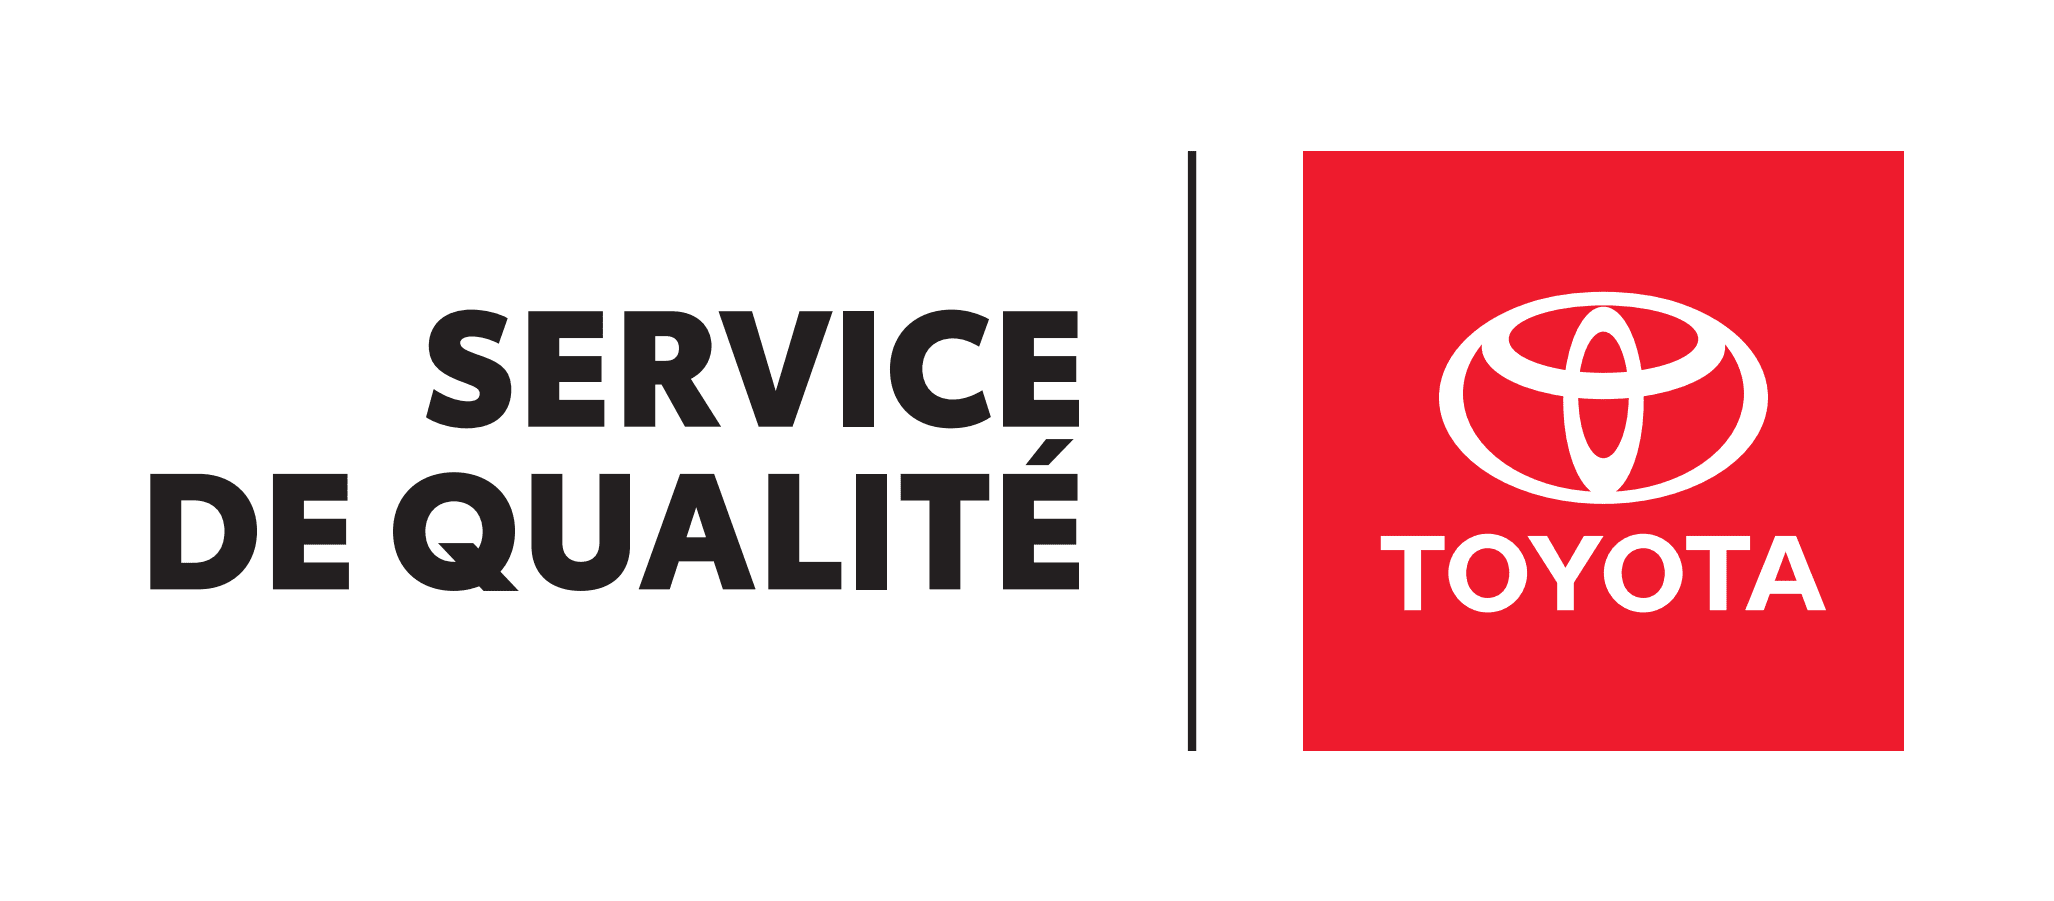 Service de qualité Toyota